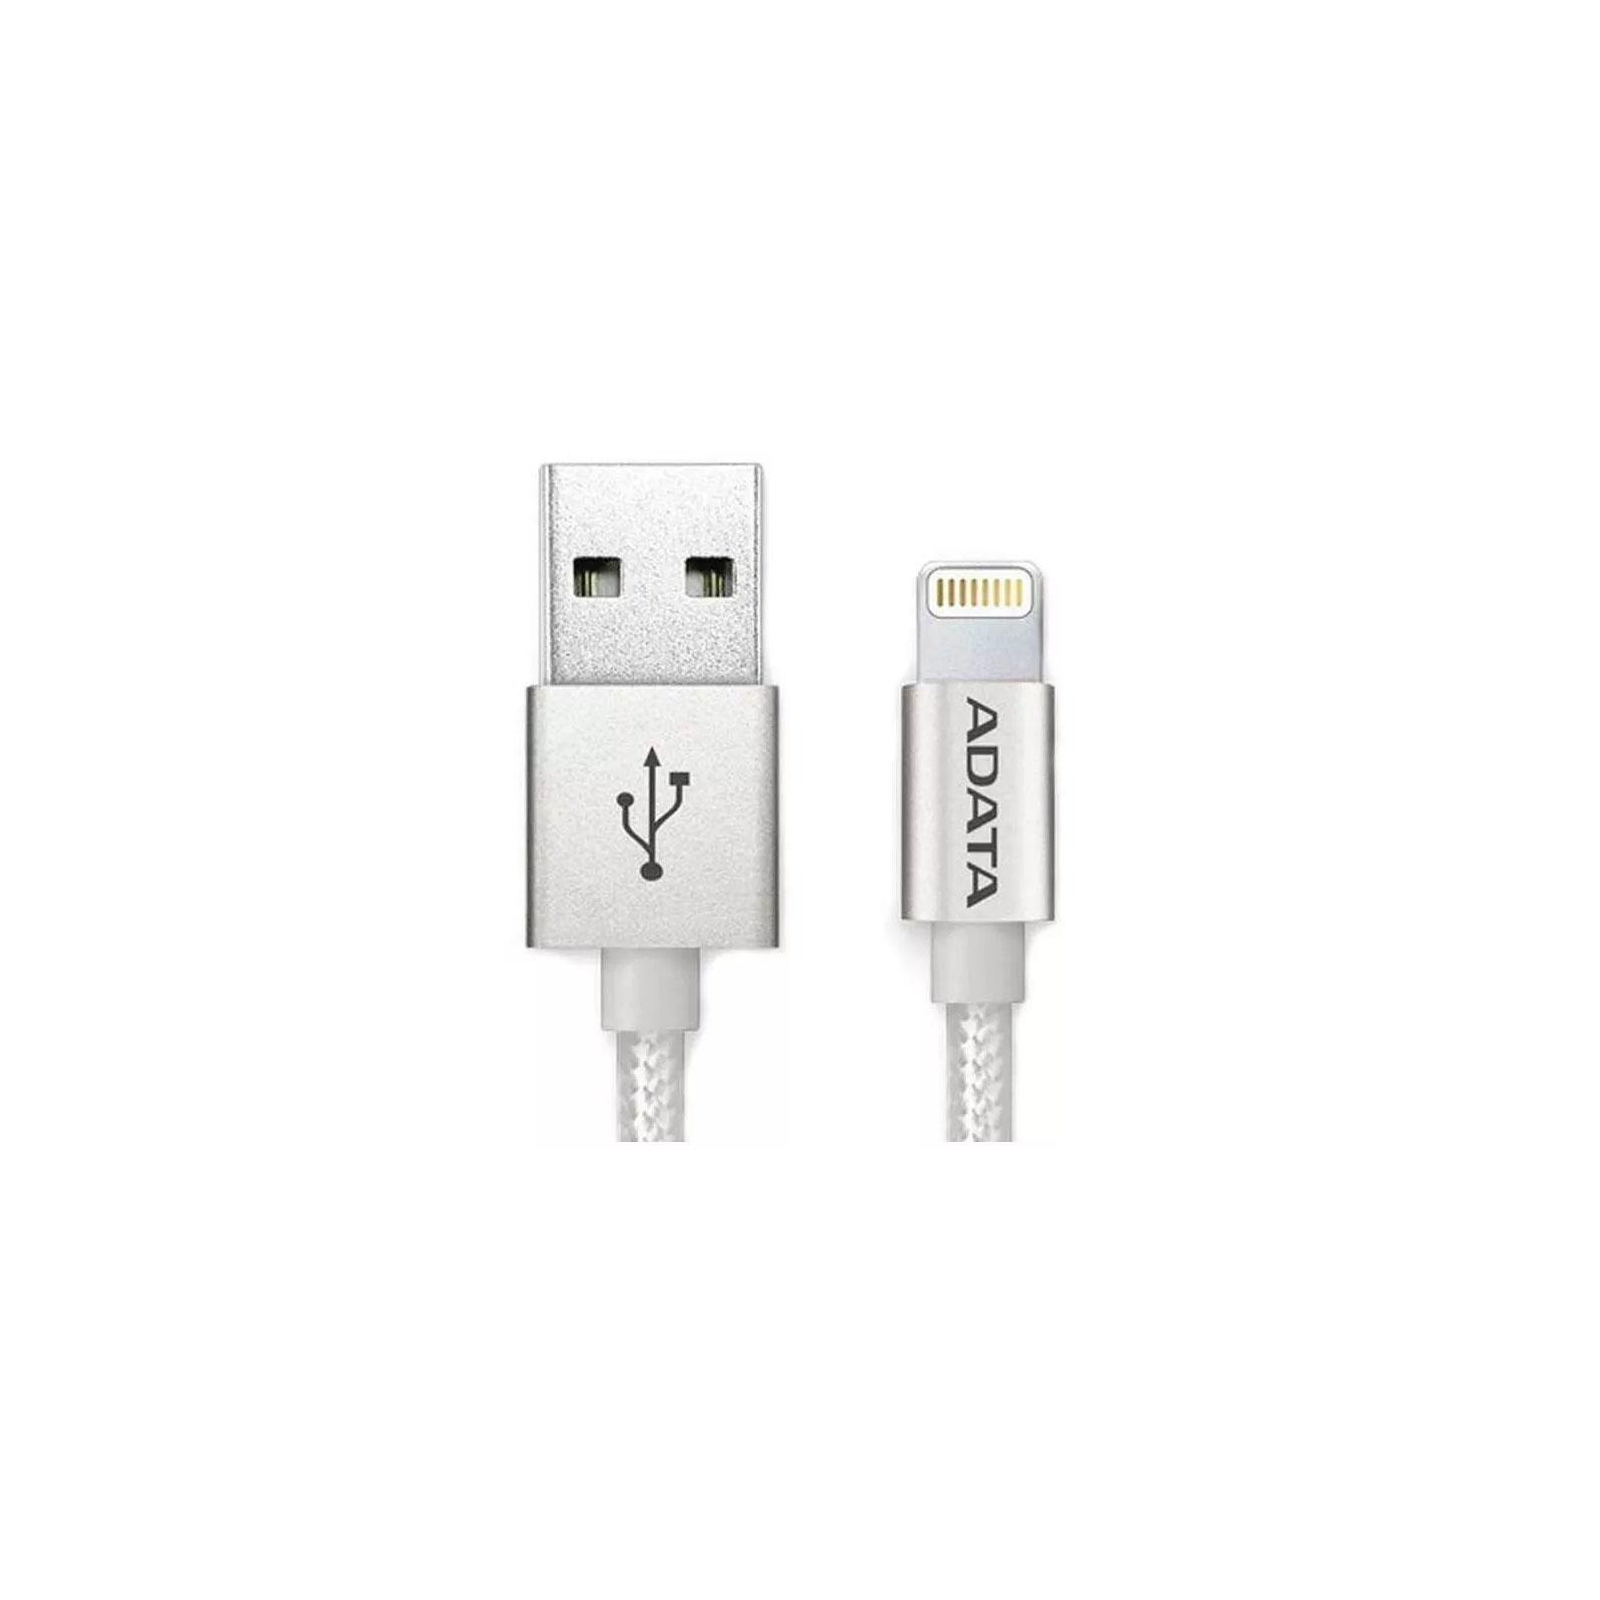 Дата кабель USB 2.0 AM to Lightning 1.0m MFI Silver ADATA (AMFIAL-100CMK-CSV) изображение 2